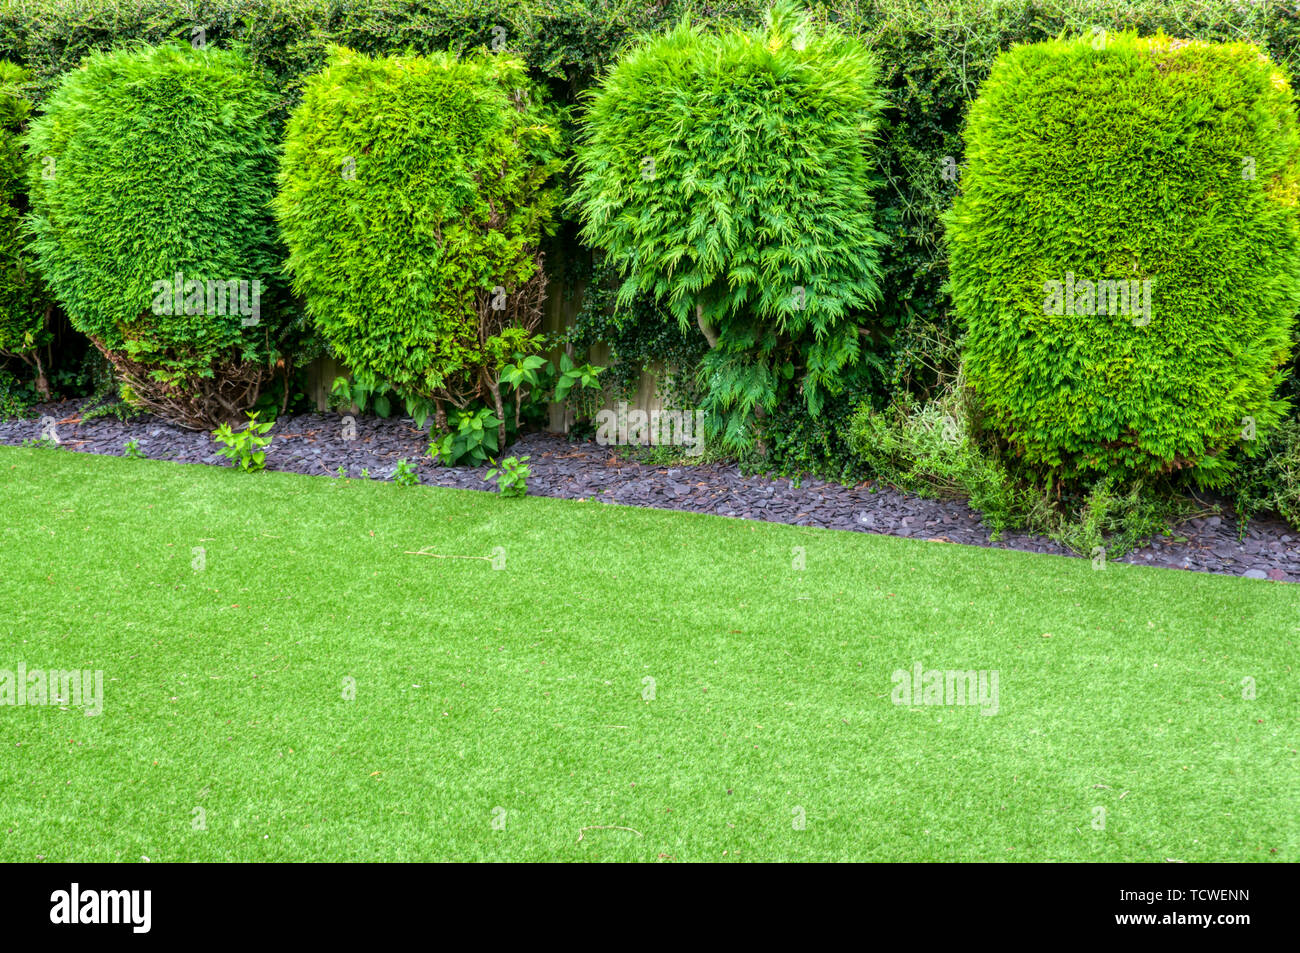 A lawn of artificial grass in a suburban garden. Stock Photo